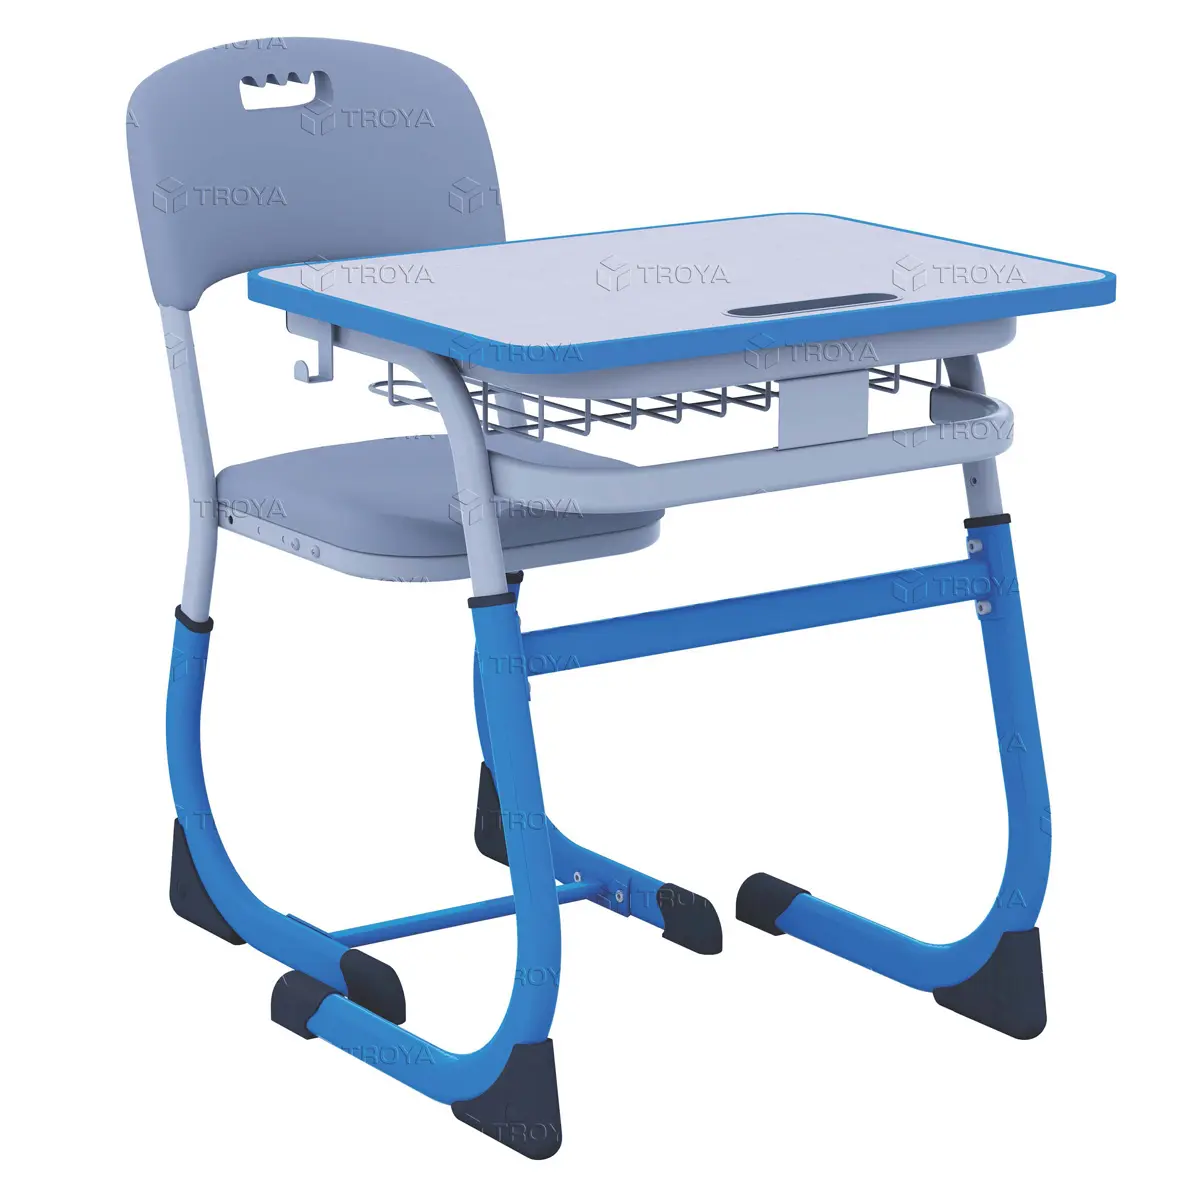 طقم مقعد واحد ذكي مع كرسي واحد. اللون الرمادي/الأزرق مع حافة مضادة للتخريب